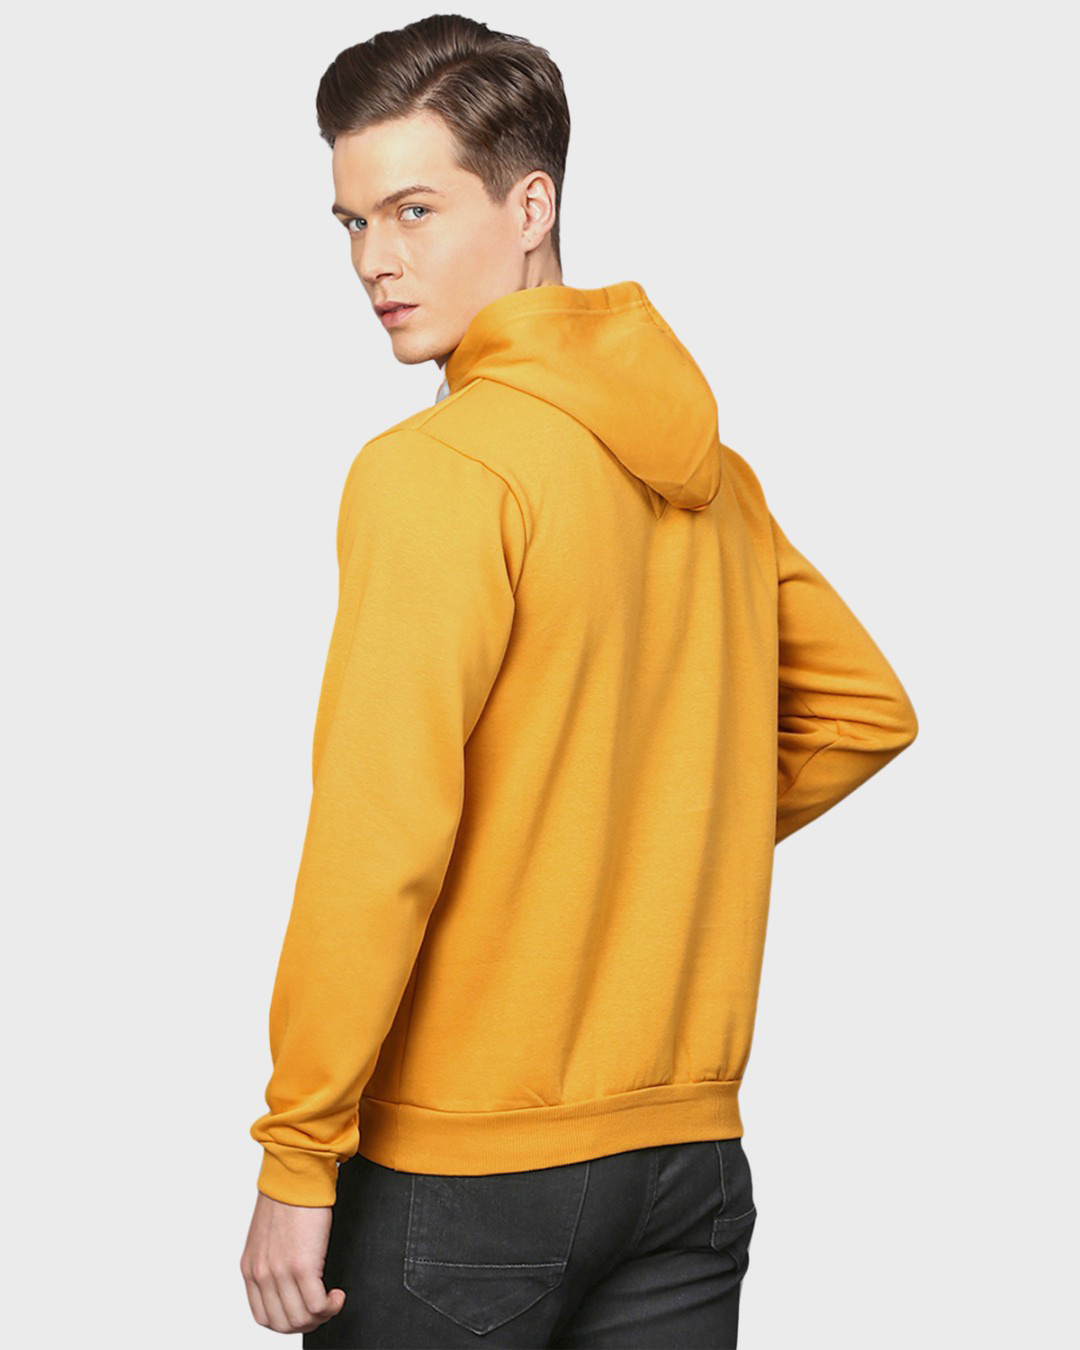 Shop Men's Yellow Typography Full Sleeve Stylish Casual Hooded Sweatshirt-Back